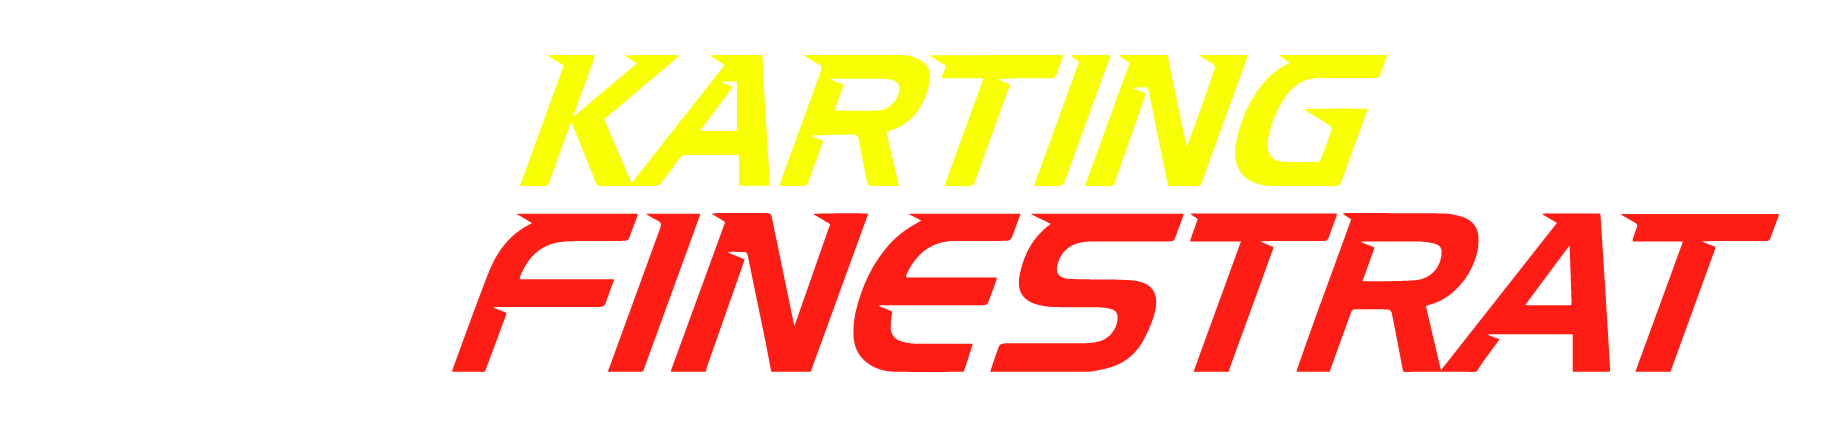 logo karting ultimo -blanco-01